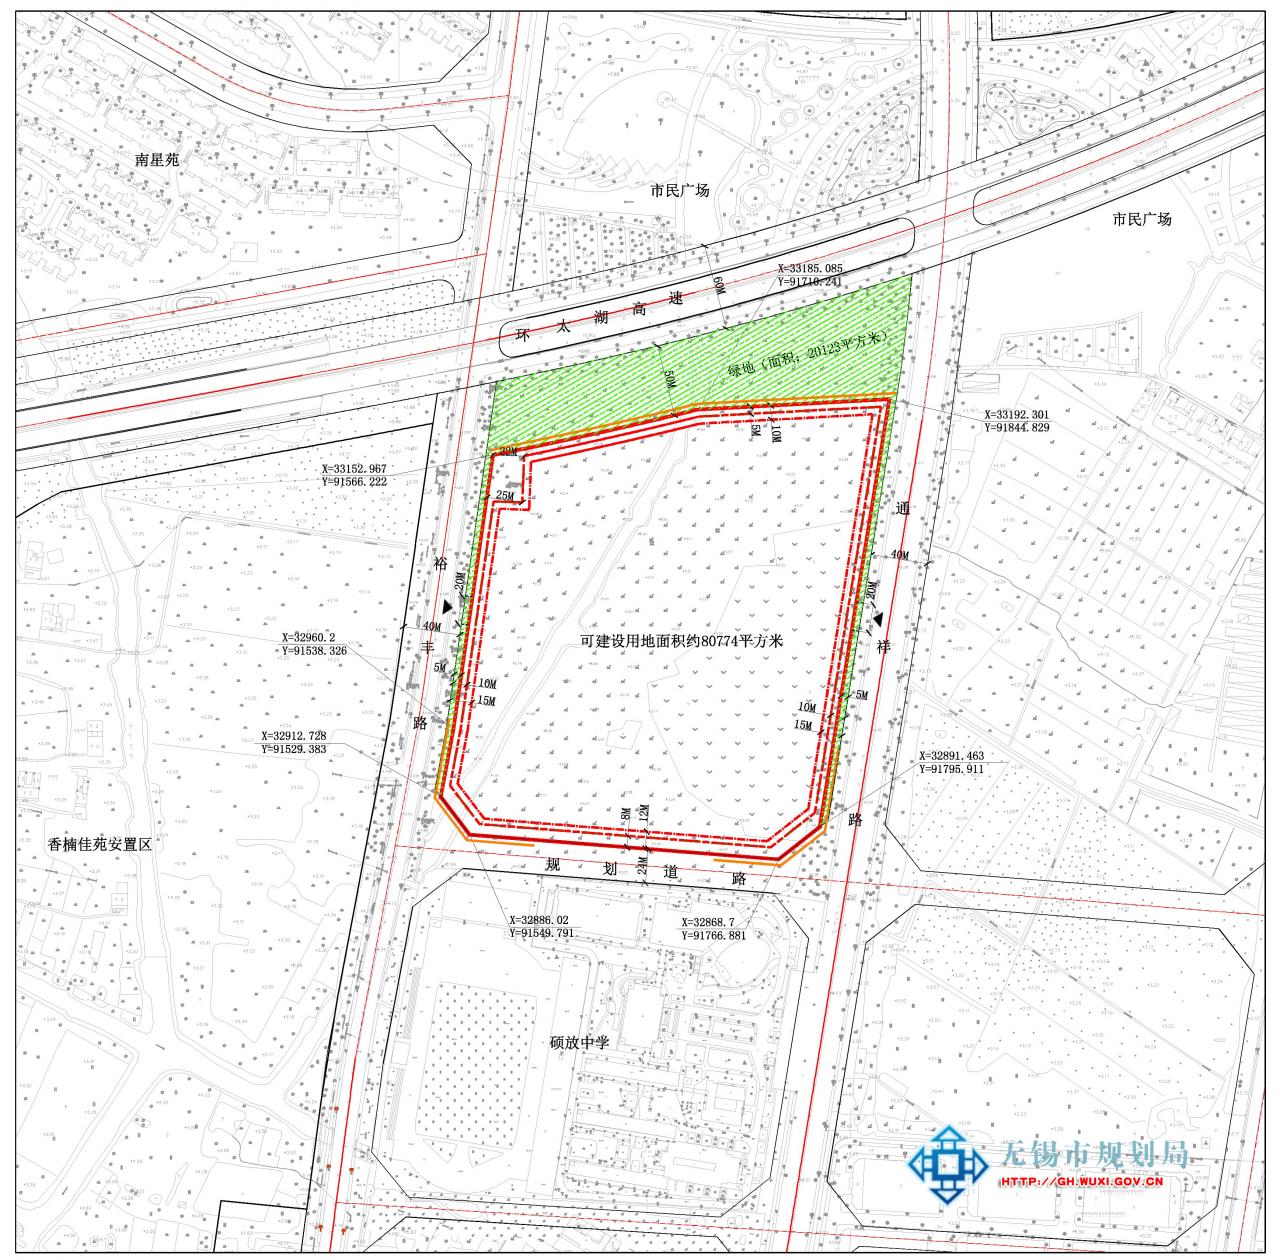 XDG-2016-18号地块房地产开发项目建设用地规划许可证批前公示